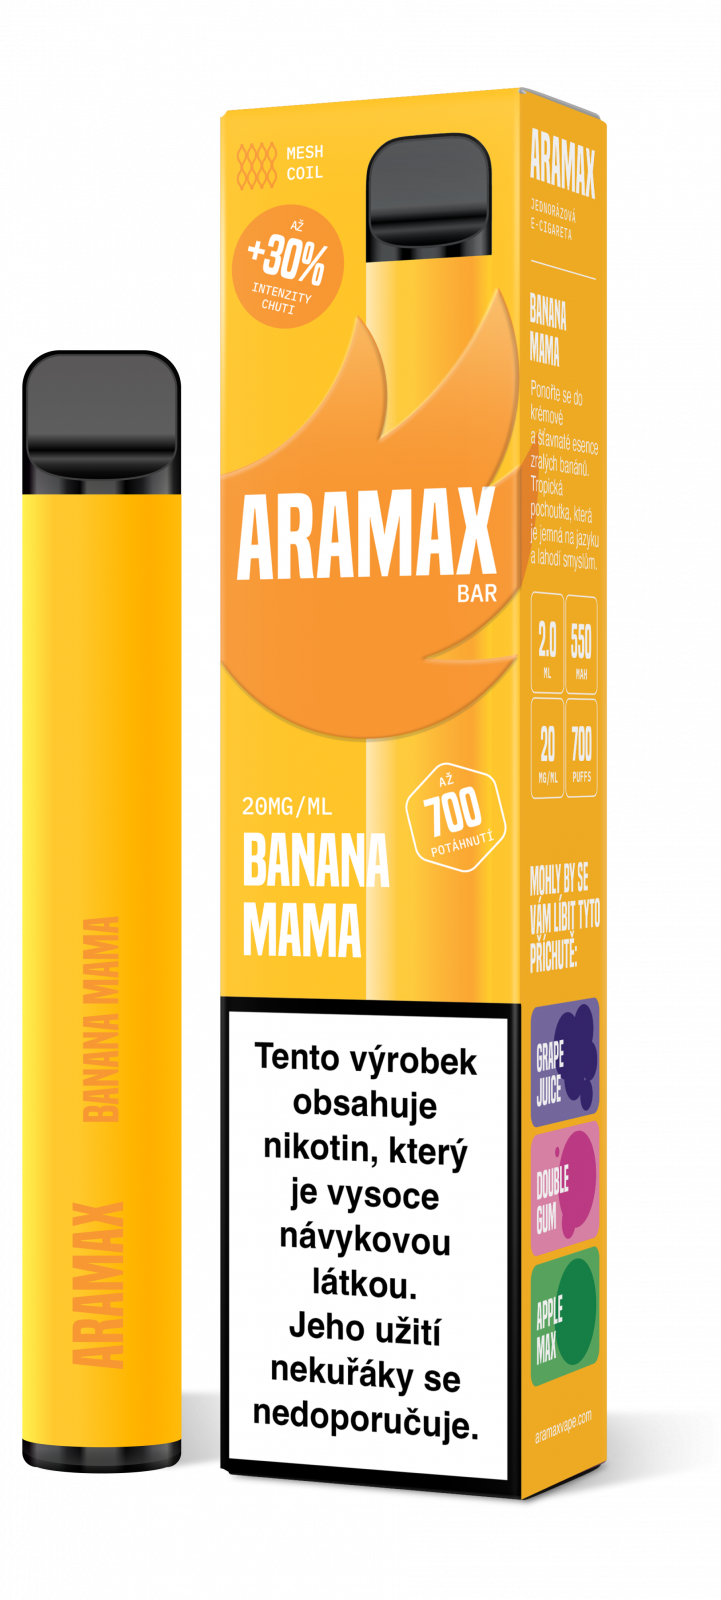 BANANA MAMA 20mg/ml - Aramax Bar 700 - jednorázová e-cigareta